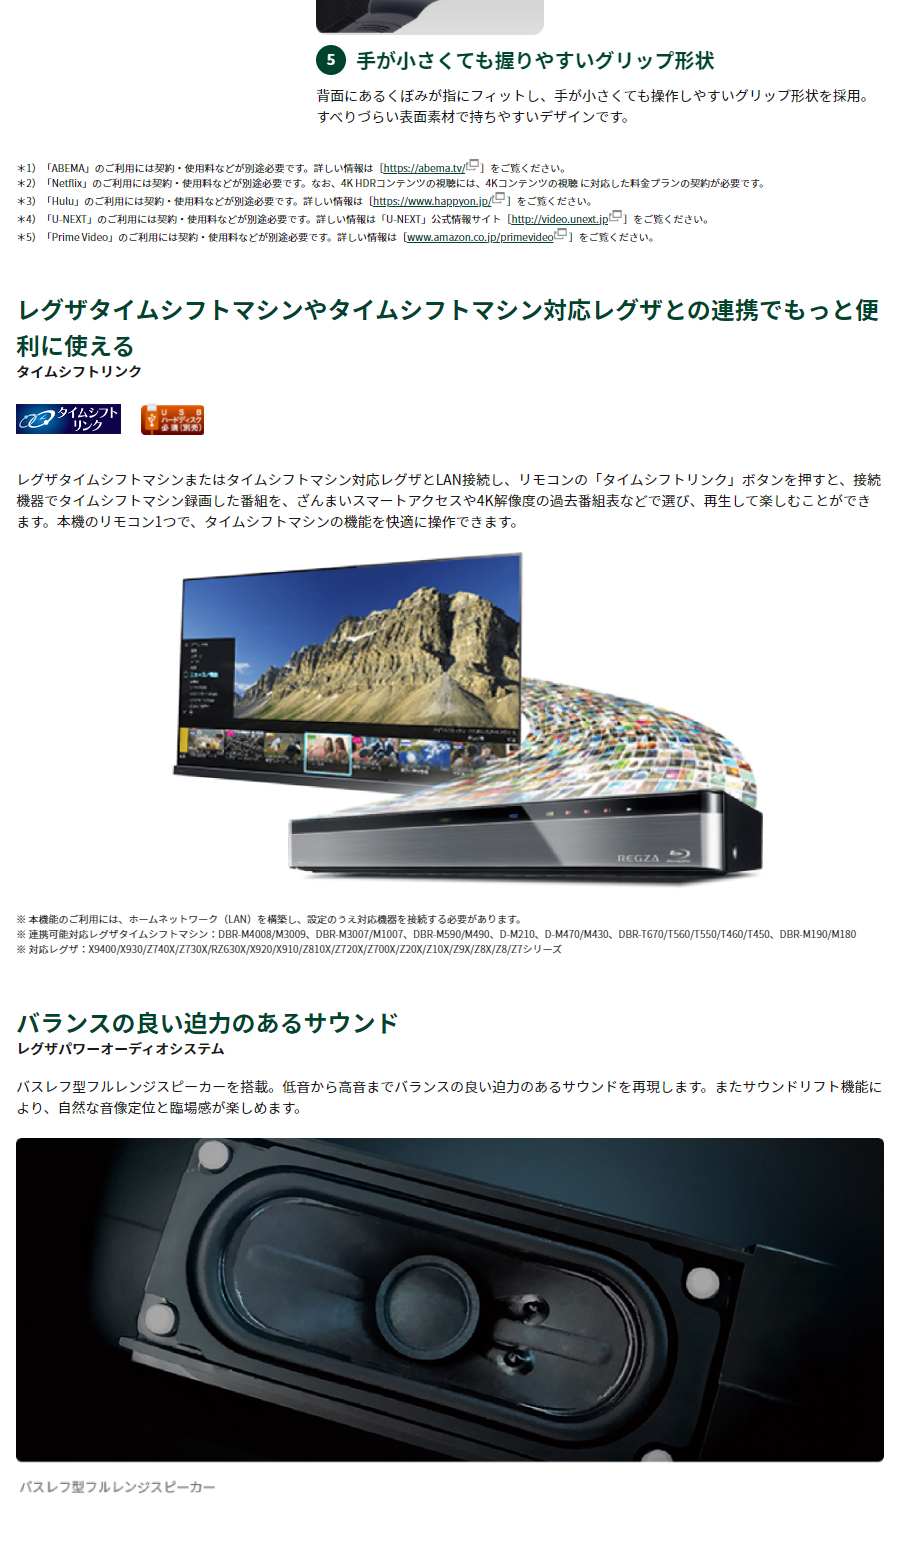 テレビ 50型 LED液晶テレビ東芝 レグザ TOSHIBA REGZA 50インチ TV 4K 